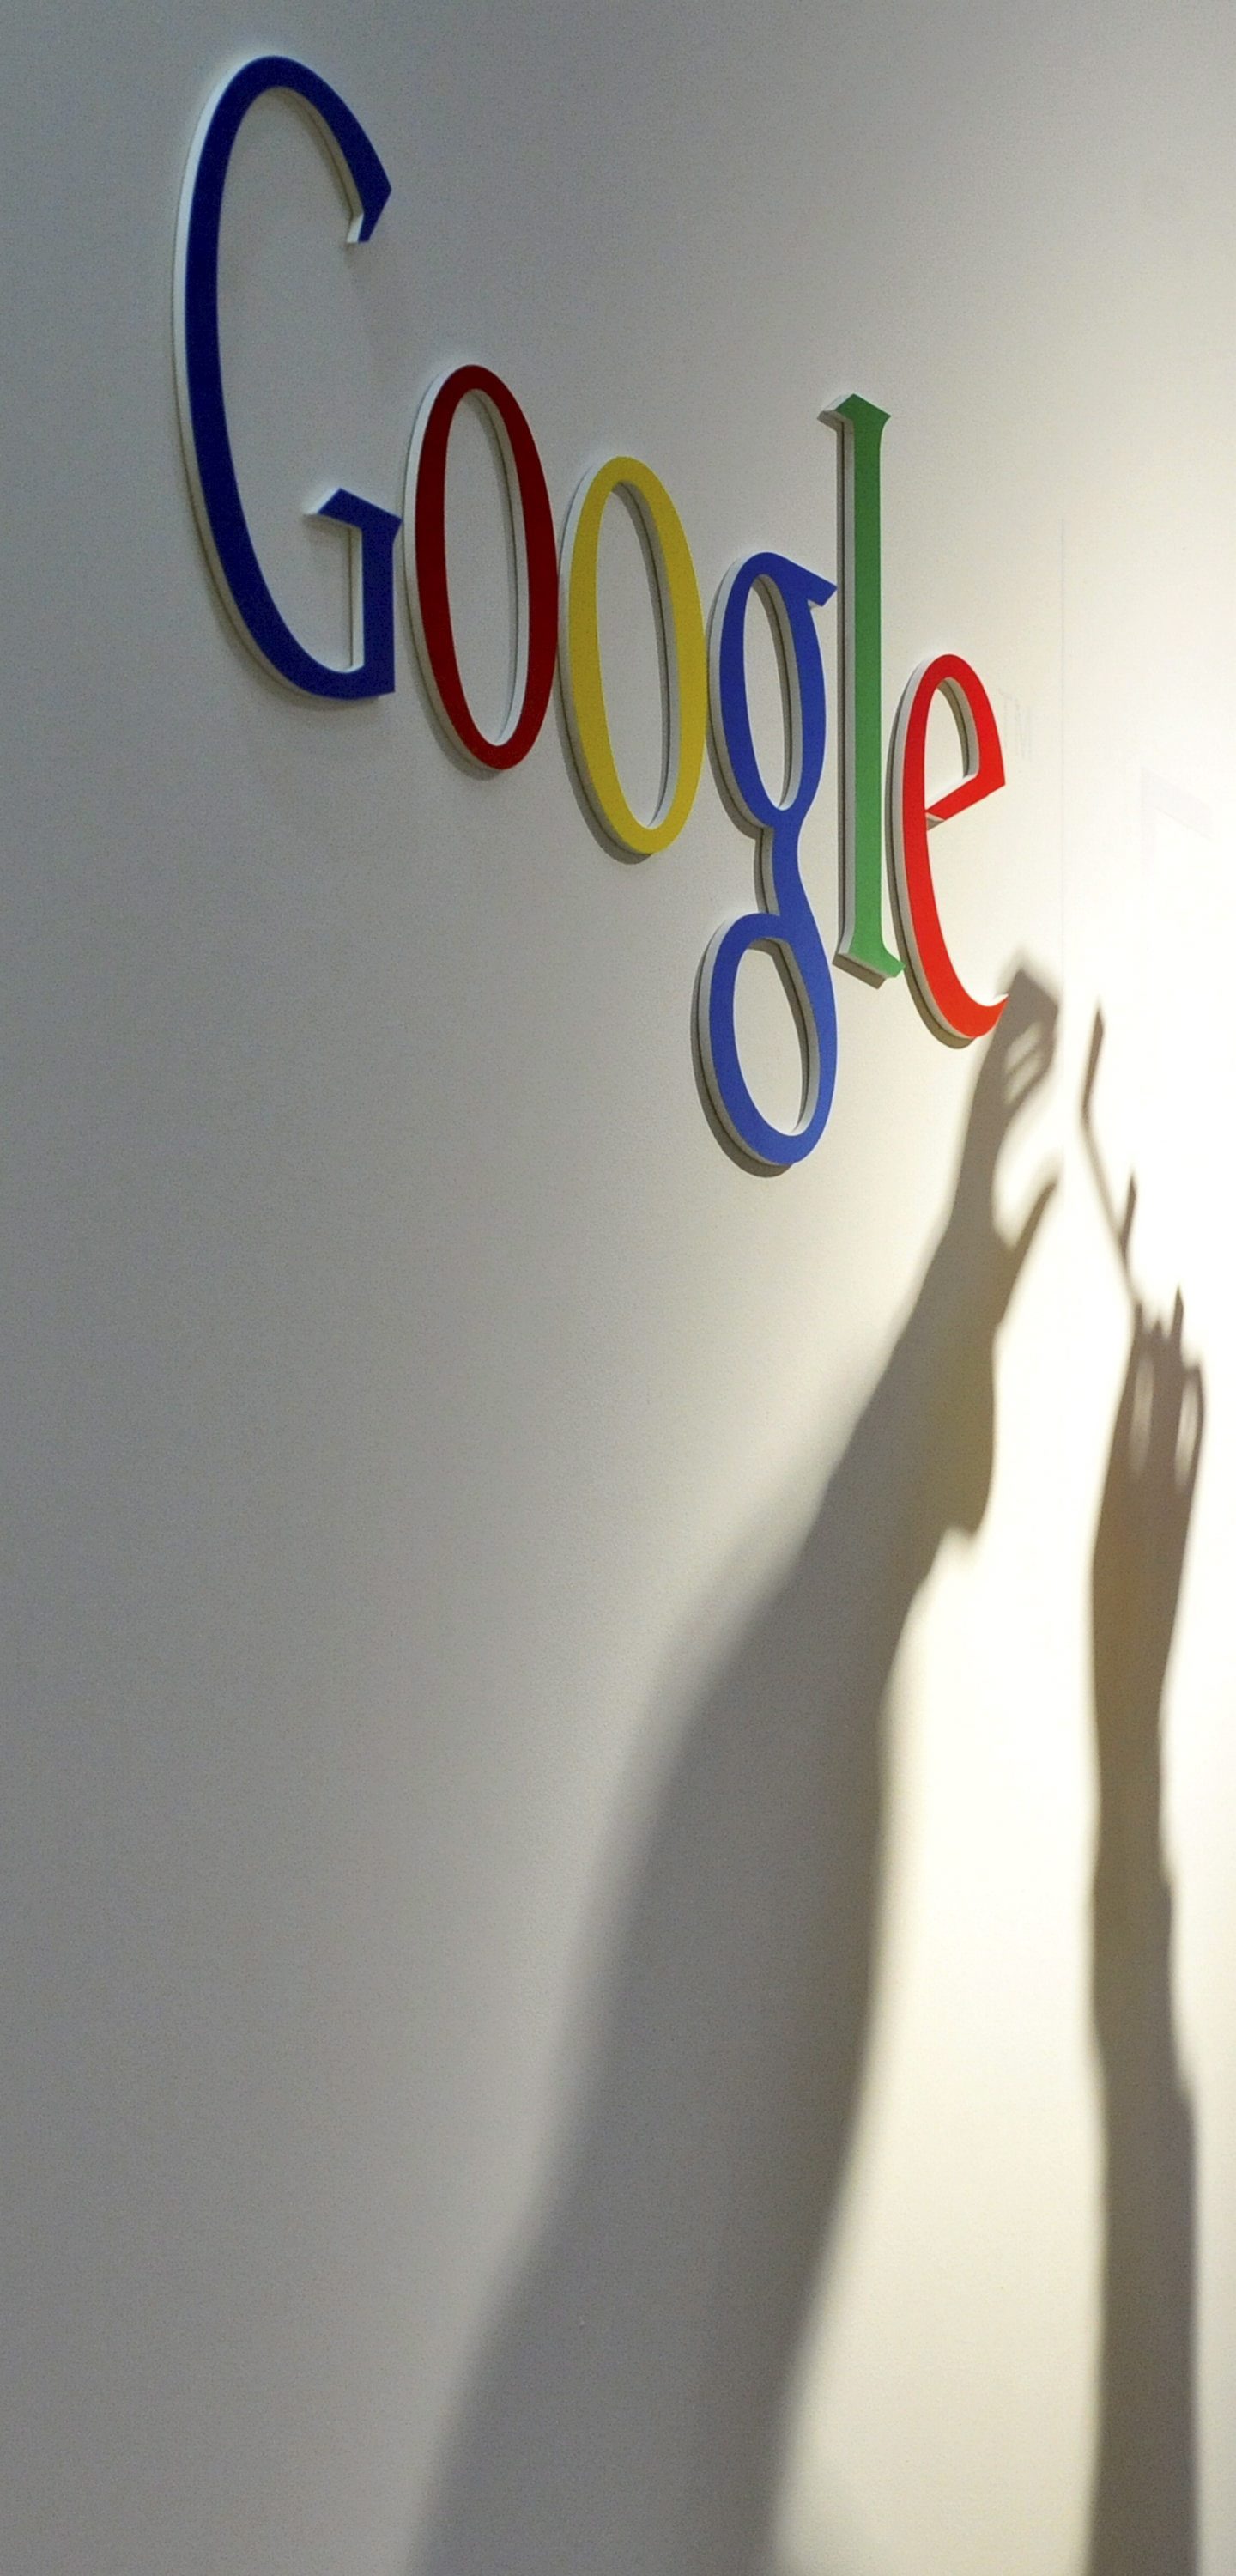 Google формира мега-компания Alphabet (обновена)